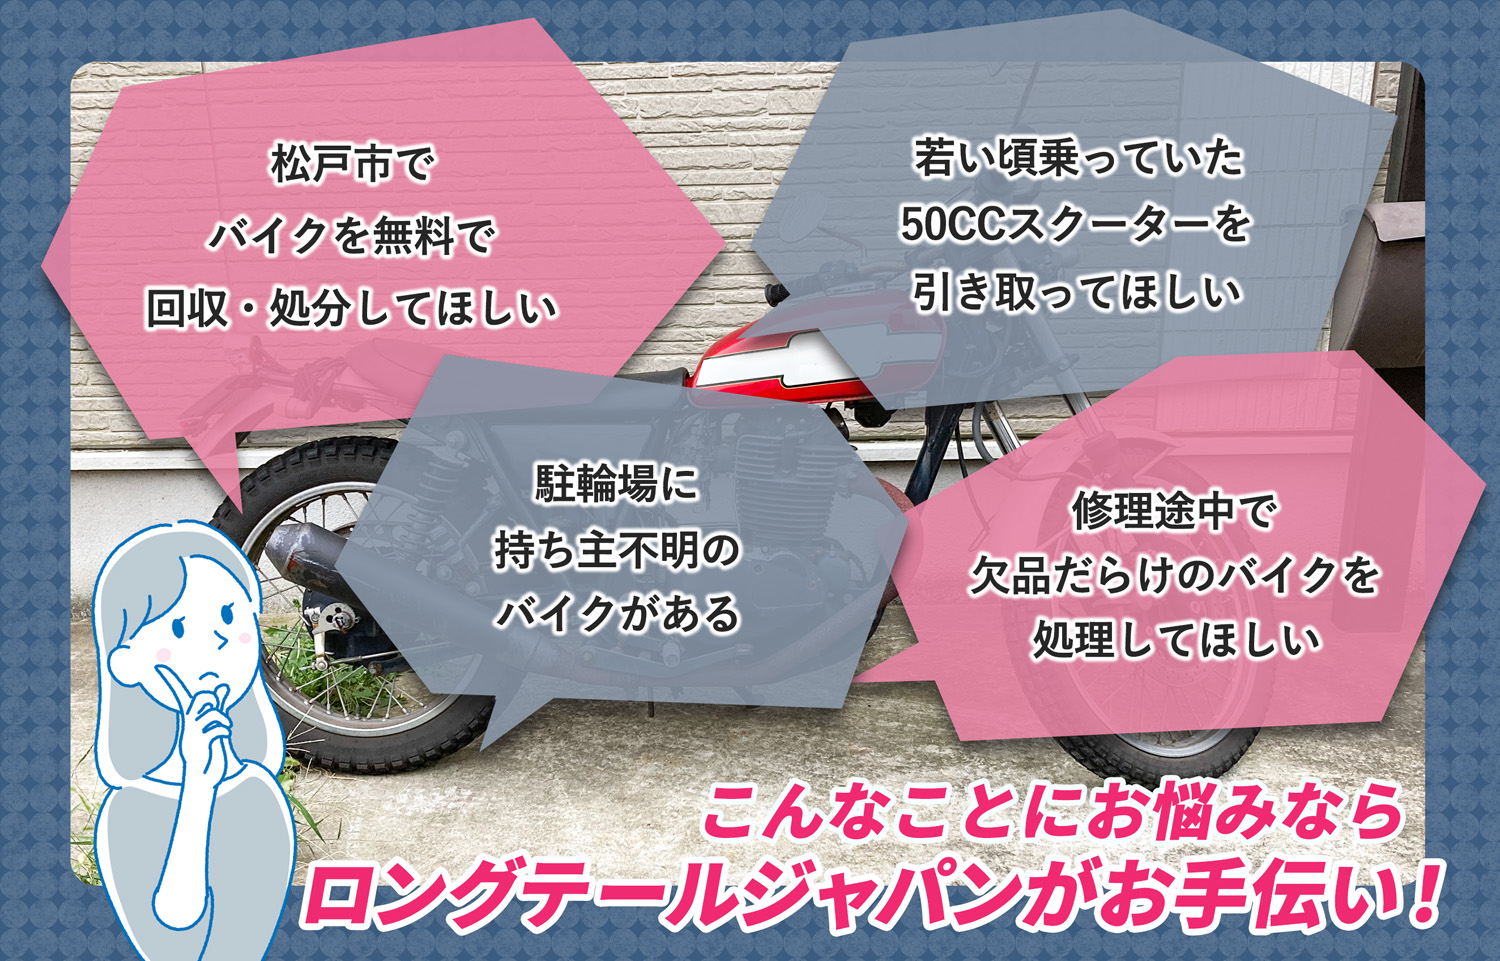 松戸市でこんなバイクの処分にお困りでしたらバイク無料回収処分隊がお手伝いいたします。